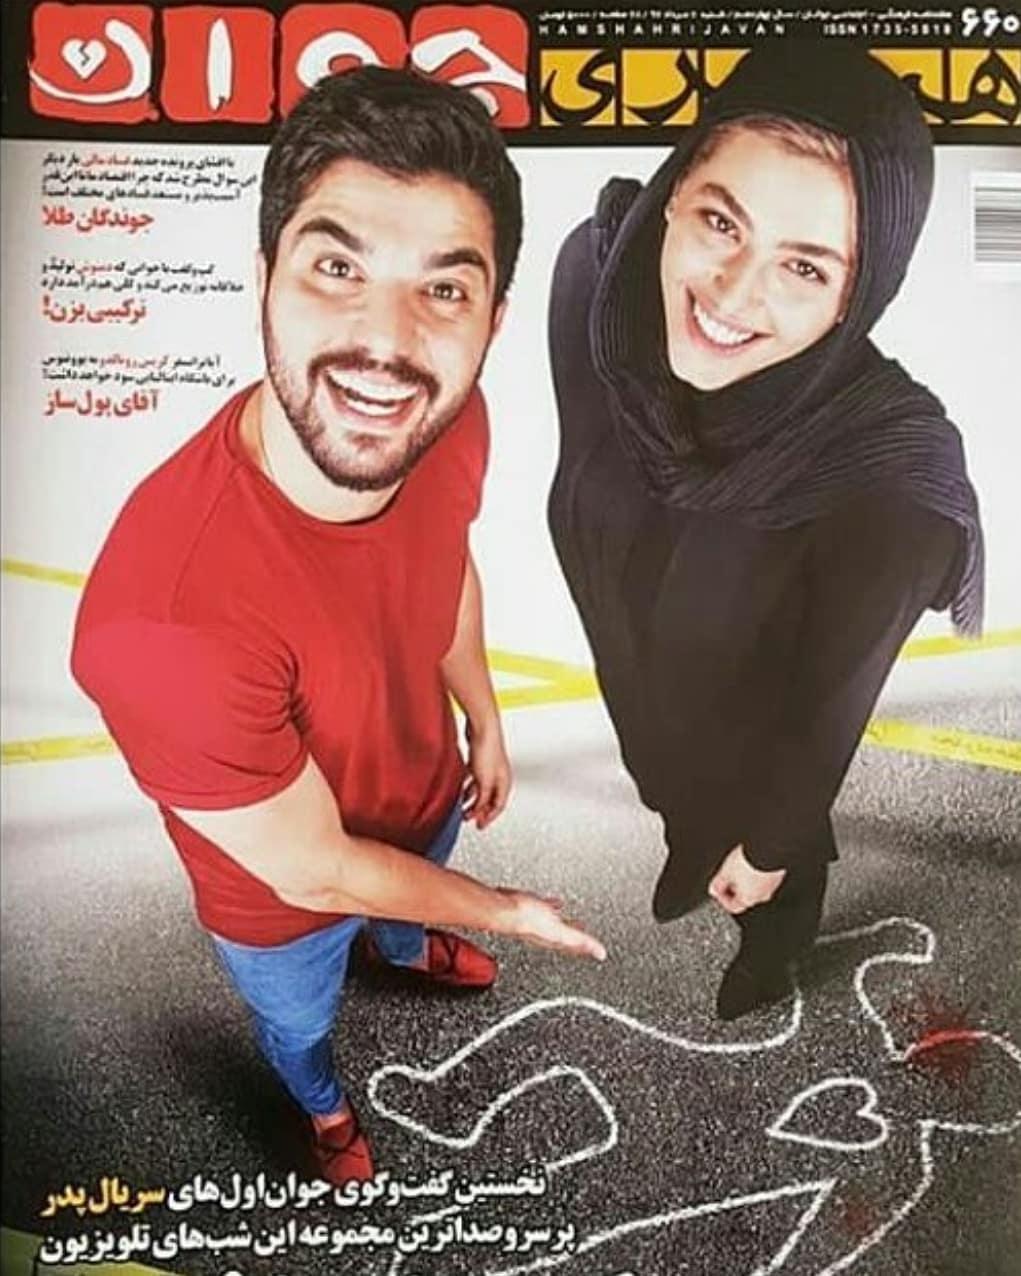 پوستر سریال تلویزیونی پدر با حضور ریحانه پارسا و سینا مهراد